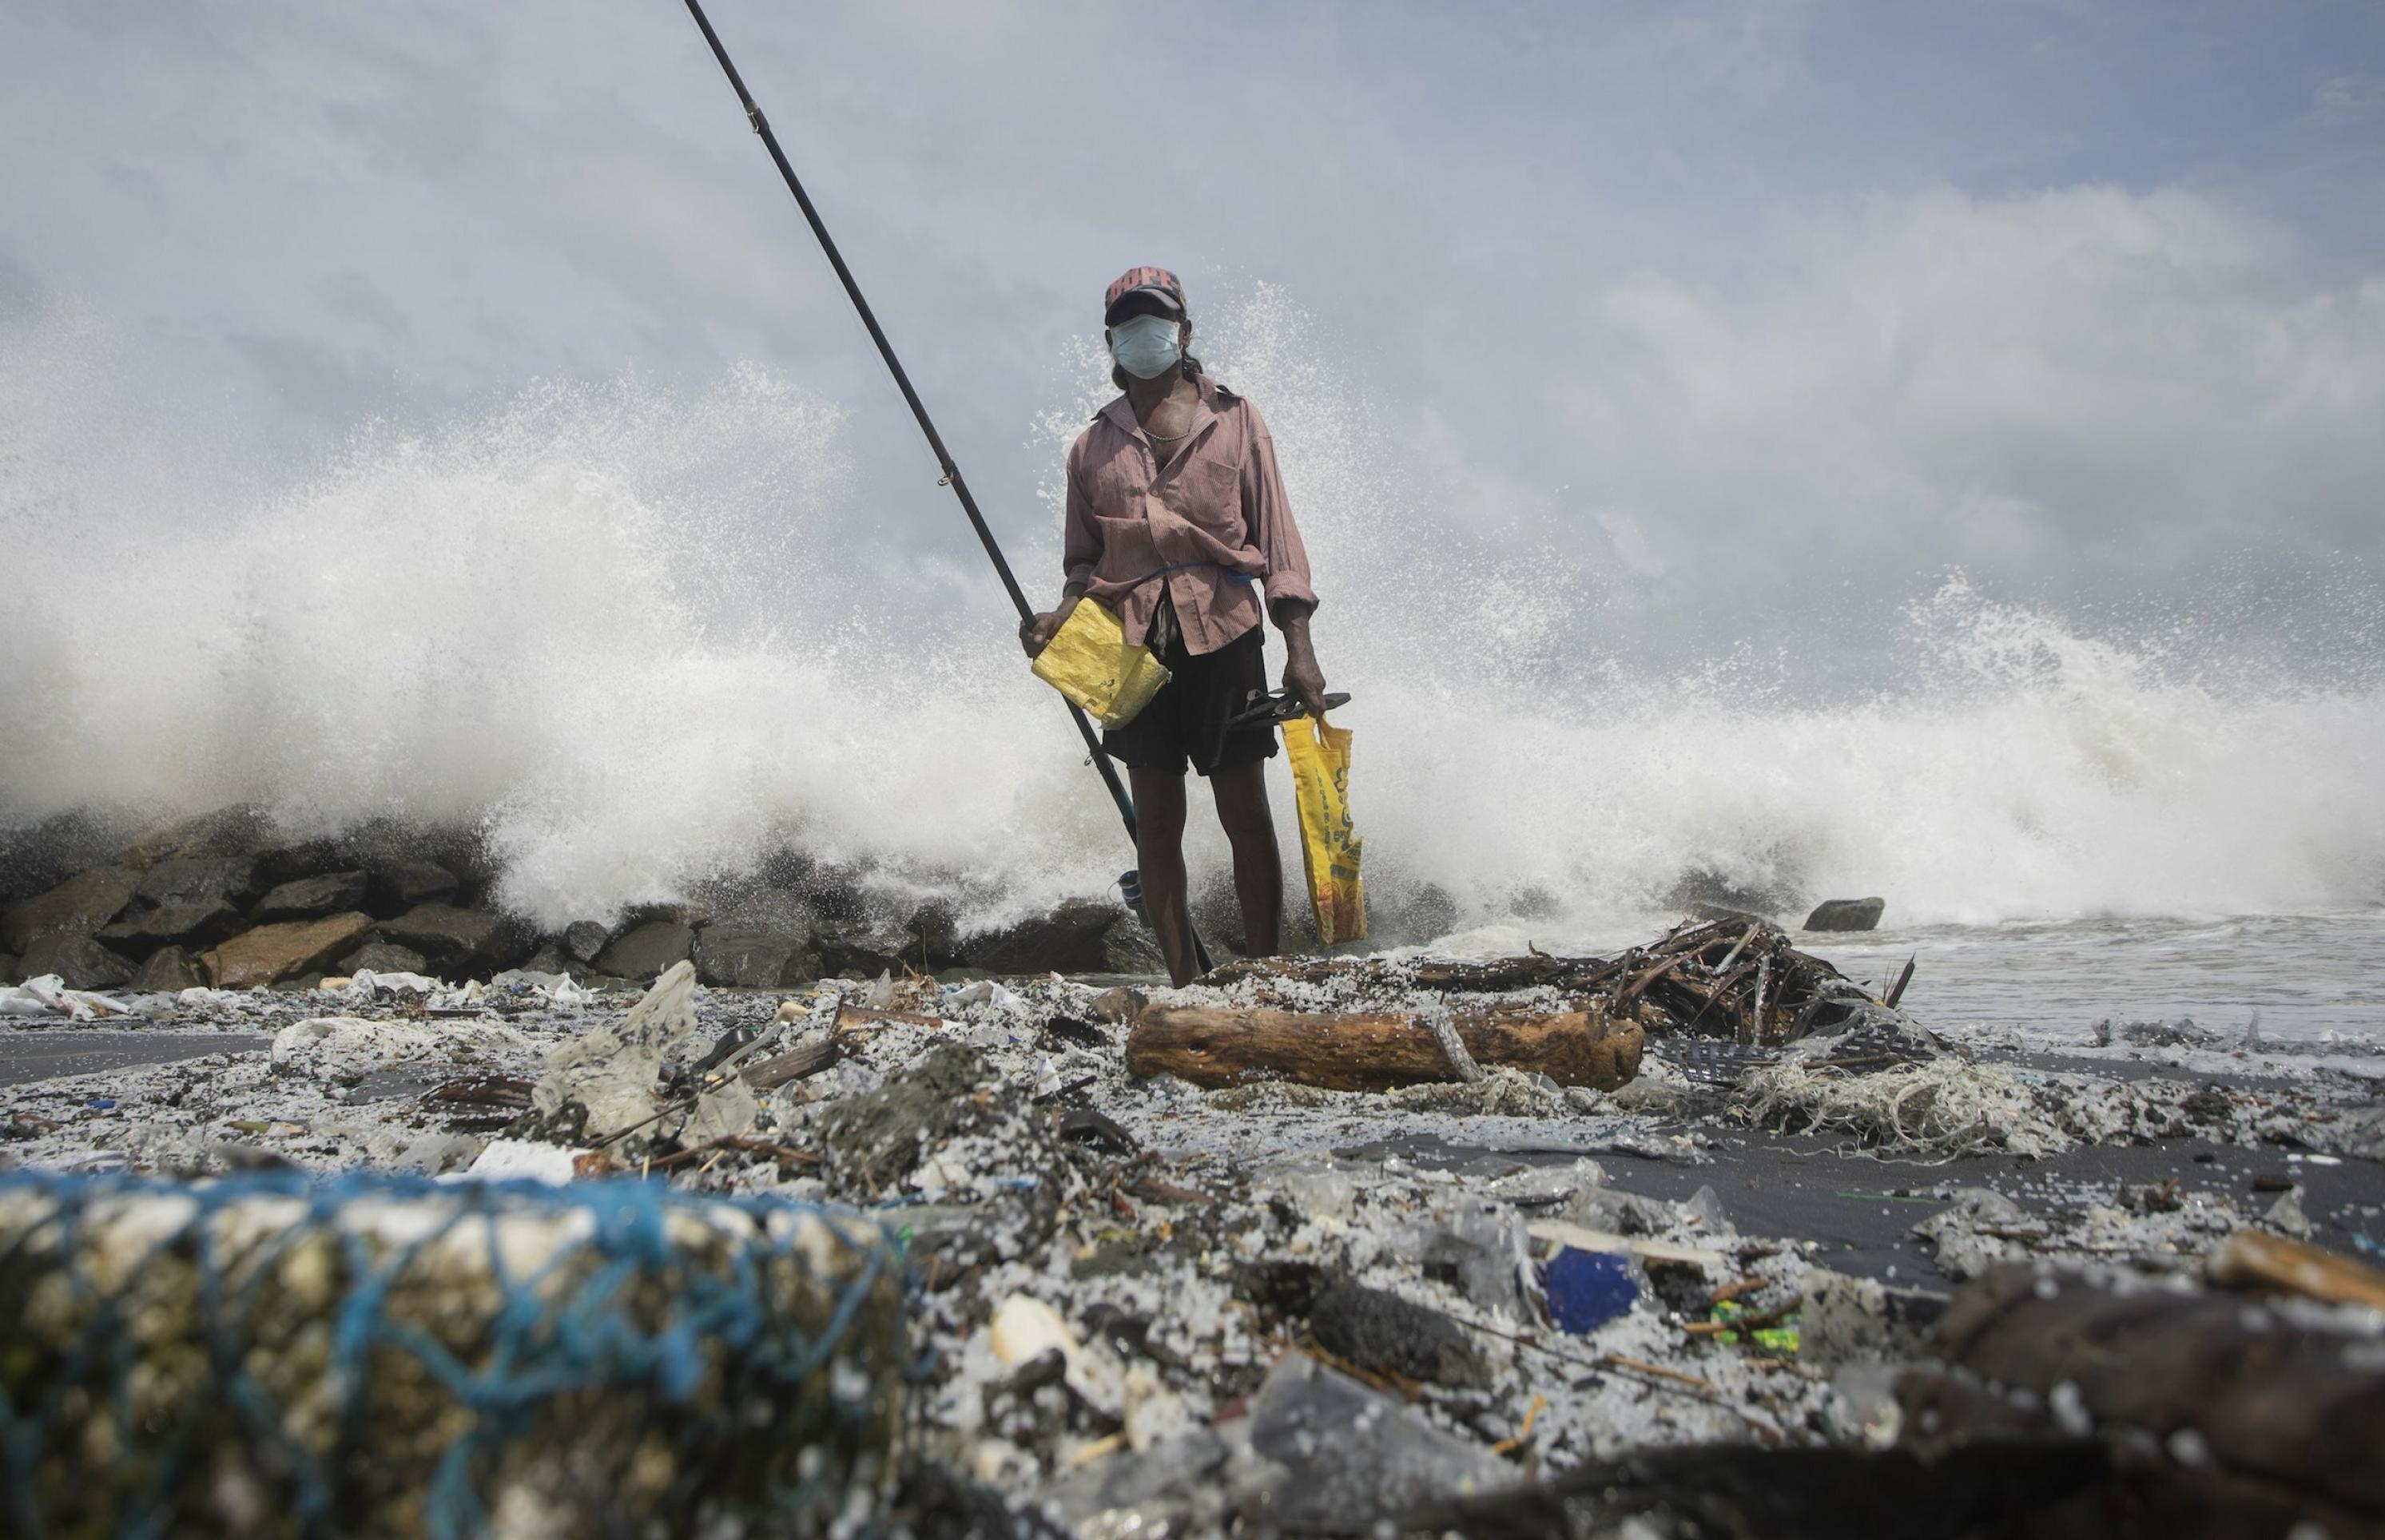 Fischer inmitten von Müll am Strand mit einer langen Angel in der Hand.